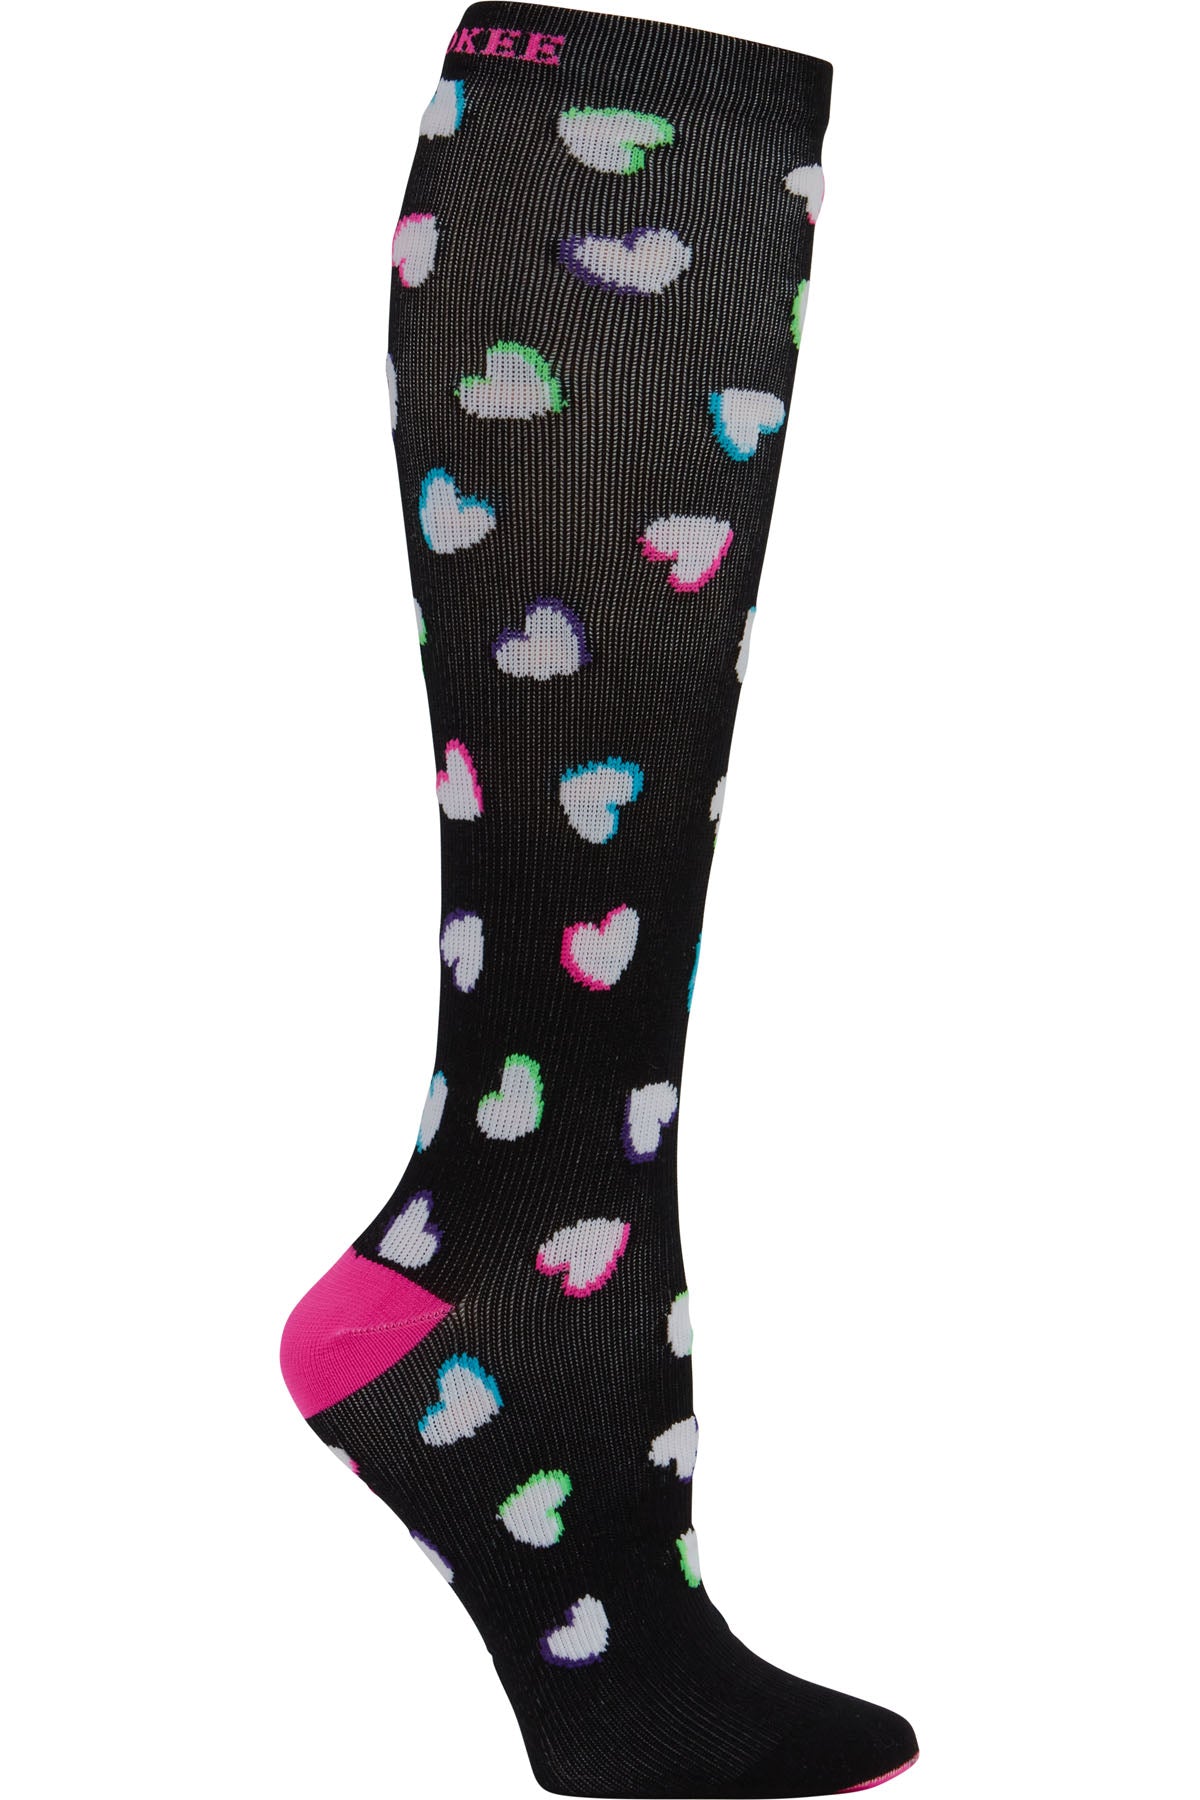 Regular Fit - Compression Socks 10-15mmHg Compression Socks Cherokee Legwear Neon Hearts  